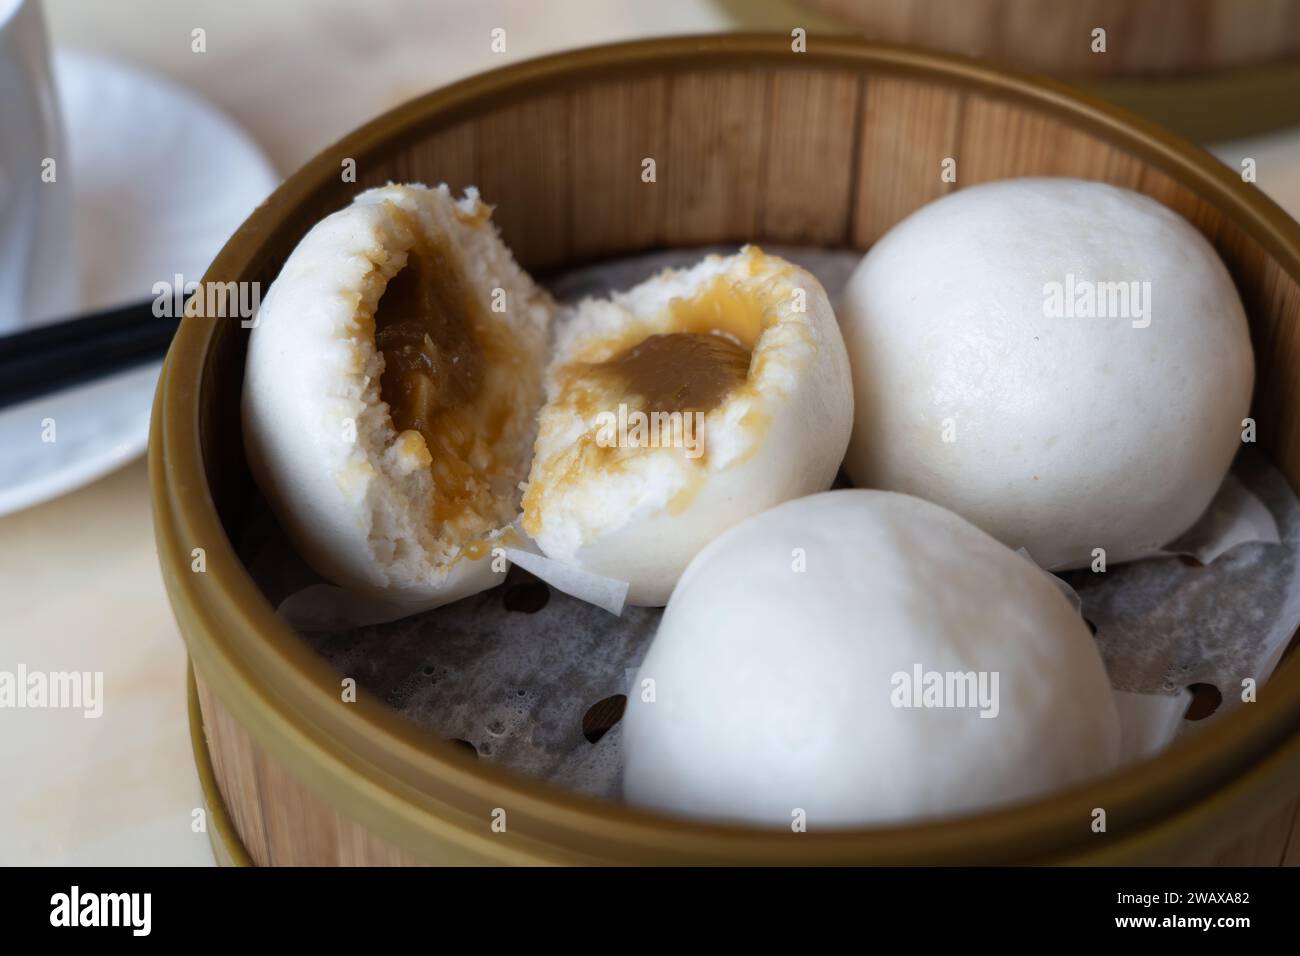 Cantonais dim sum - brioches au goût sucré lin yong (ou yung) Bao remplies de pâte de graines de lotus - servi dans un cuiseur vapeur en bambou, Royaume-Uni Banque D'Images